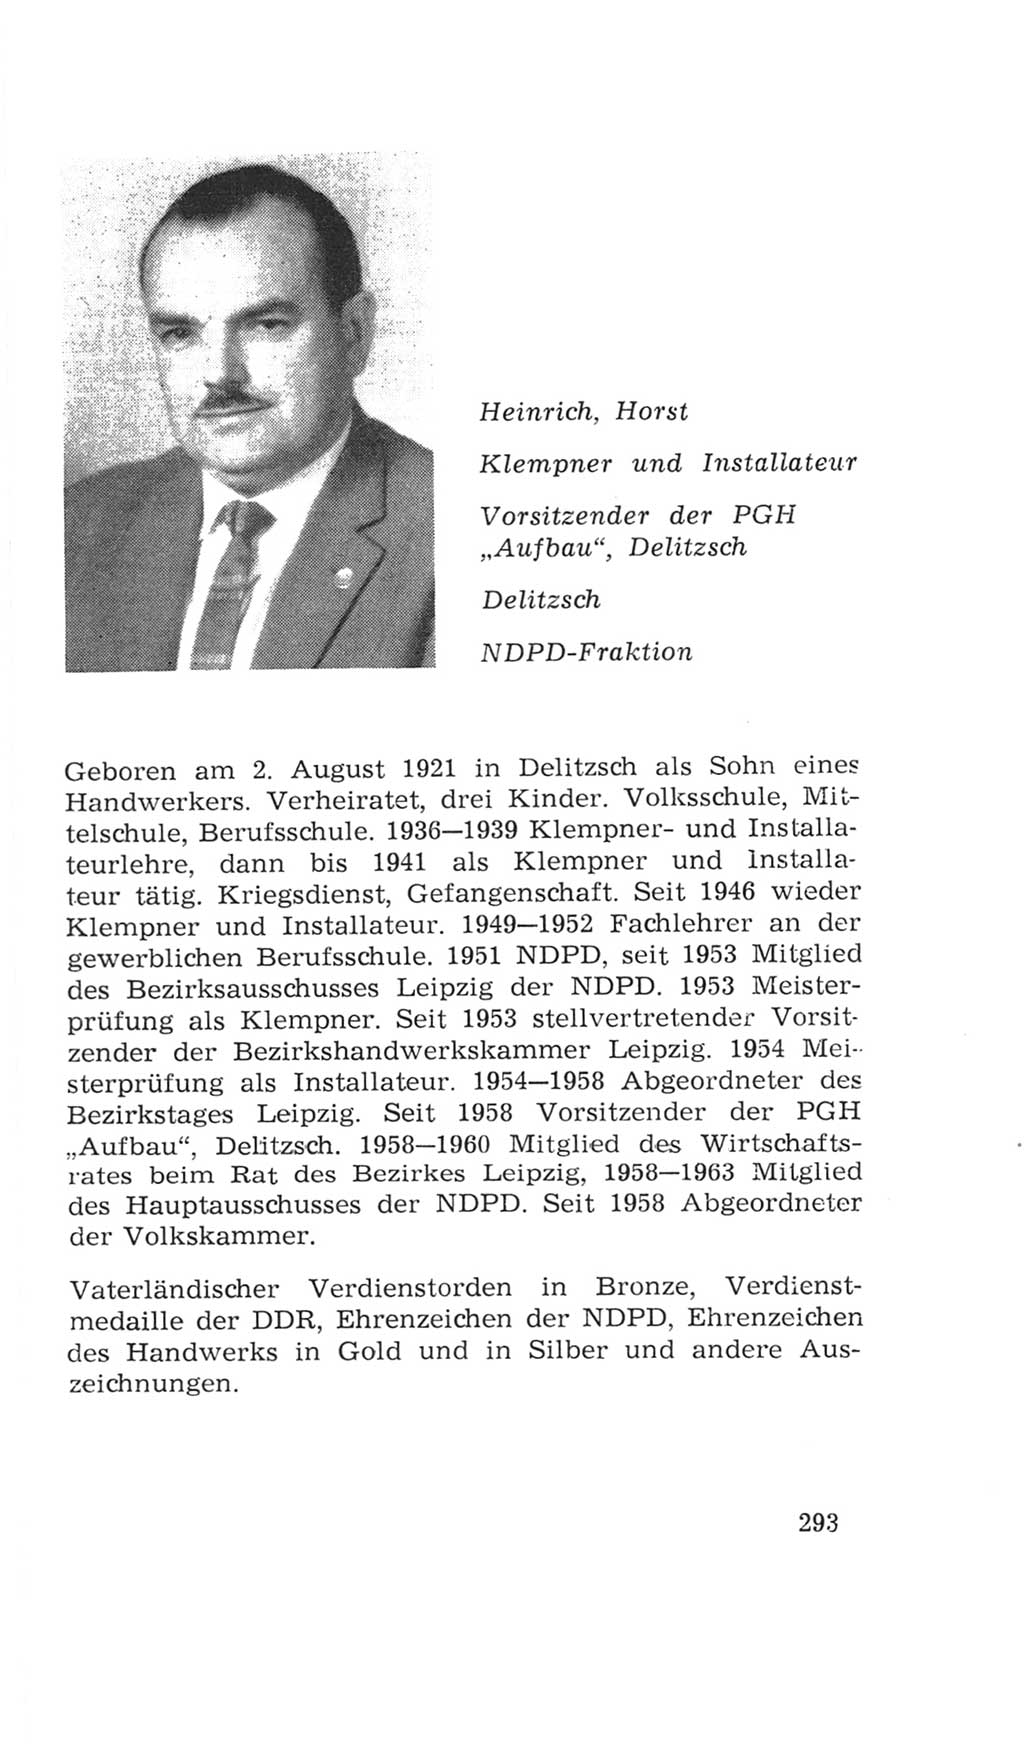 Volkskammer (VK) der Deutschen Demokratischen Republik (DDR), 4. Wahlperiode 1963-1967, Seite 293 (VK. DDR 4. WP. 1963-1967, S. 293)